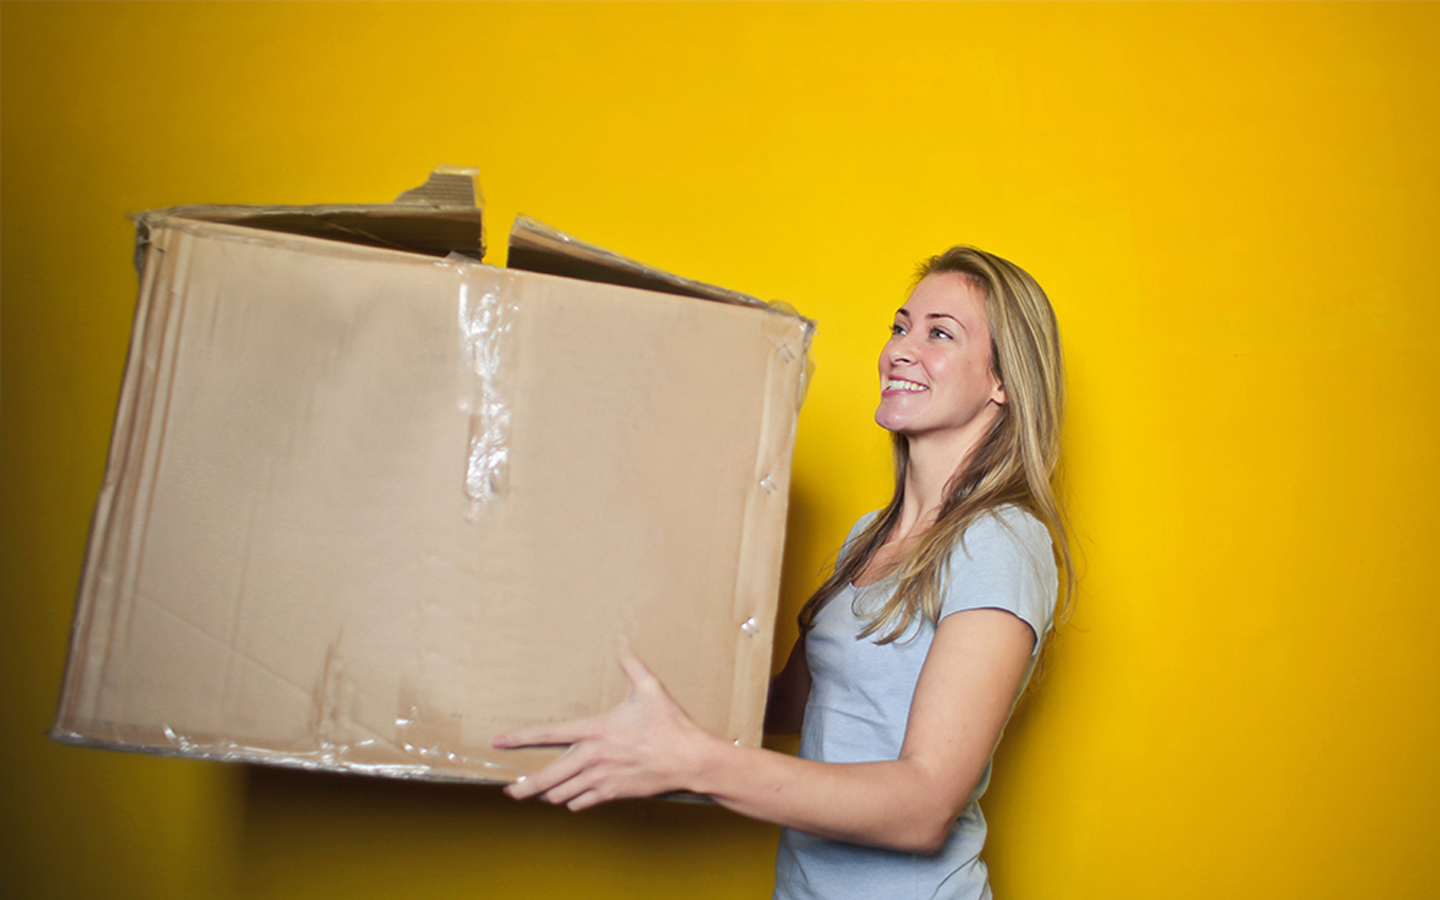 Найм профессиональных услуг, чтобы помочь с переездом вашего дома в Дубае освободит вас от дополнительных расходов на покупку картонных коробок и найма разных поставщиков, чтобы помочь перевозить крупные предметы, включая мебель